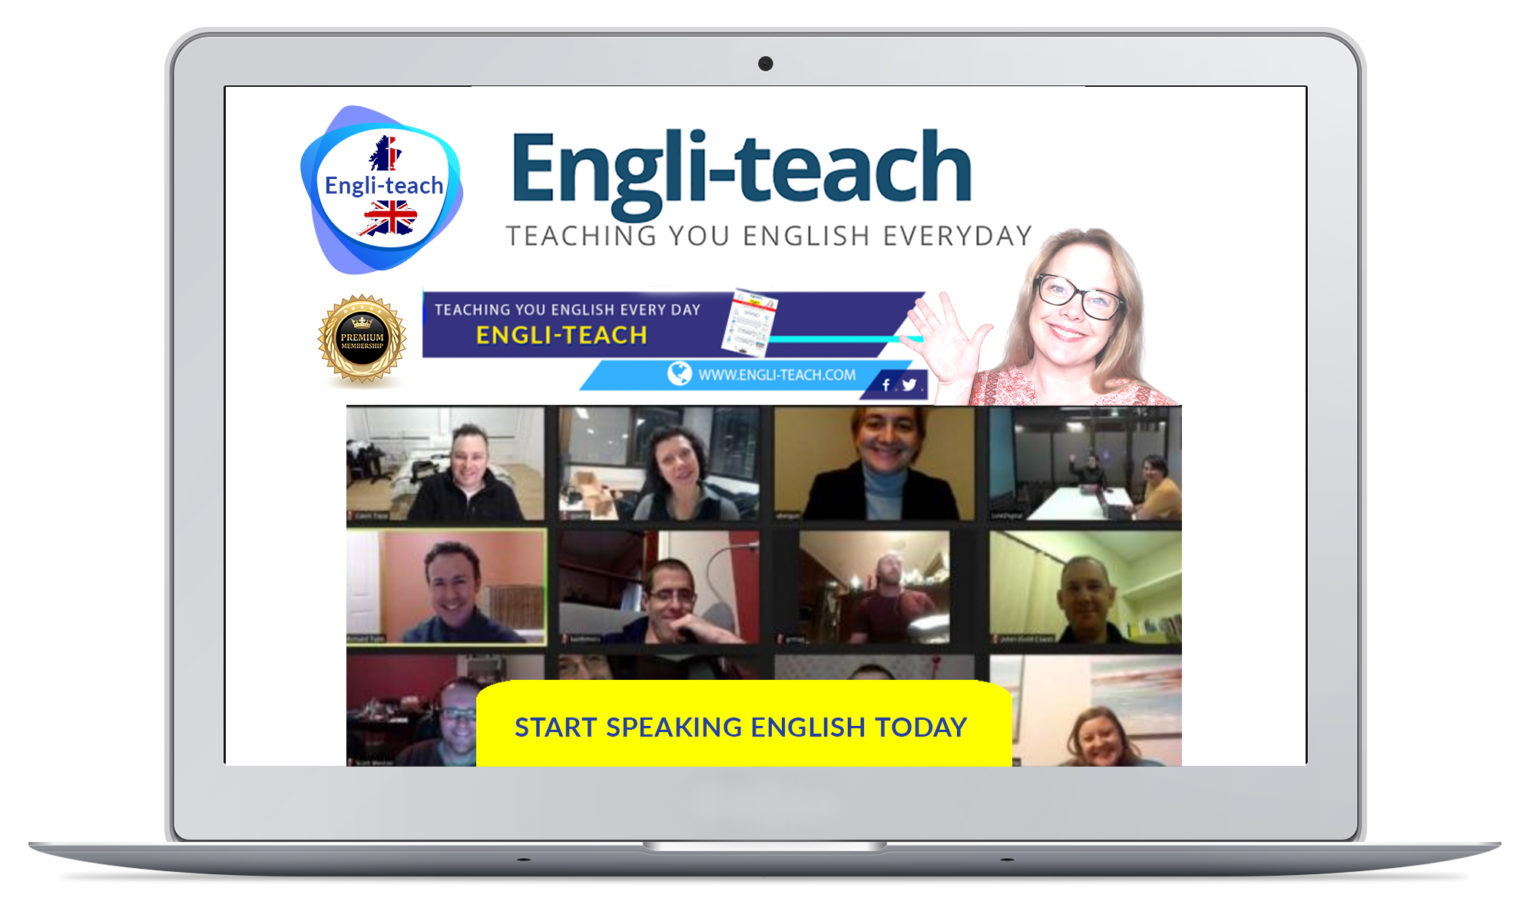 English lessons - Engli-teach.com